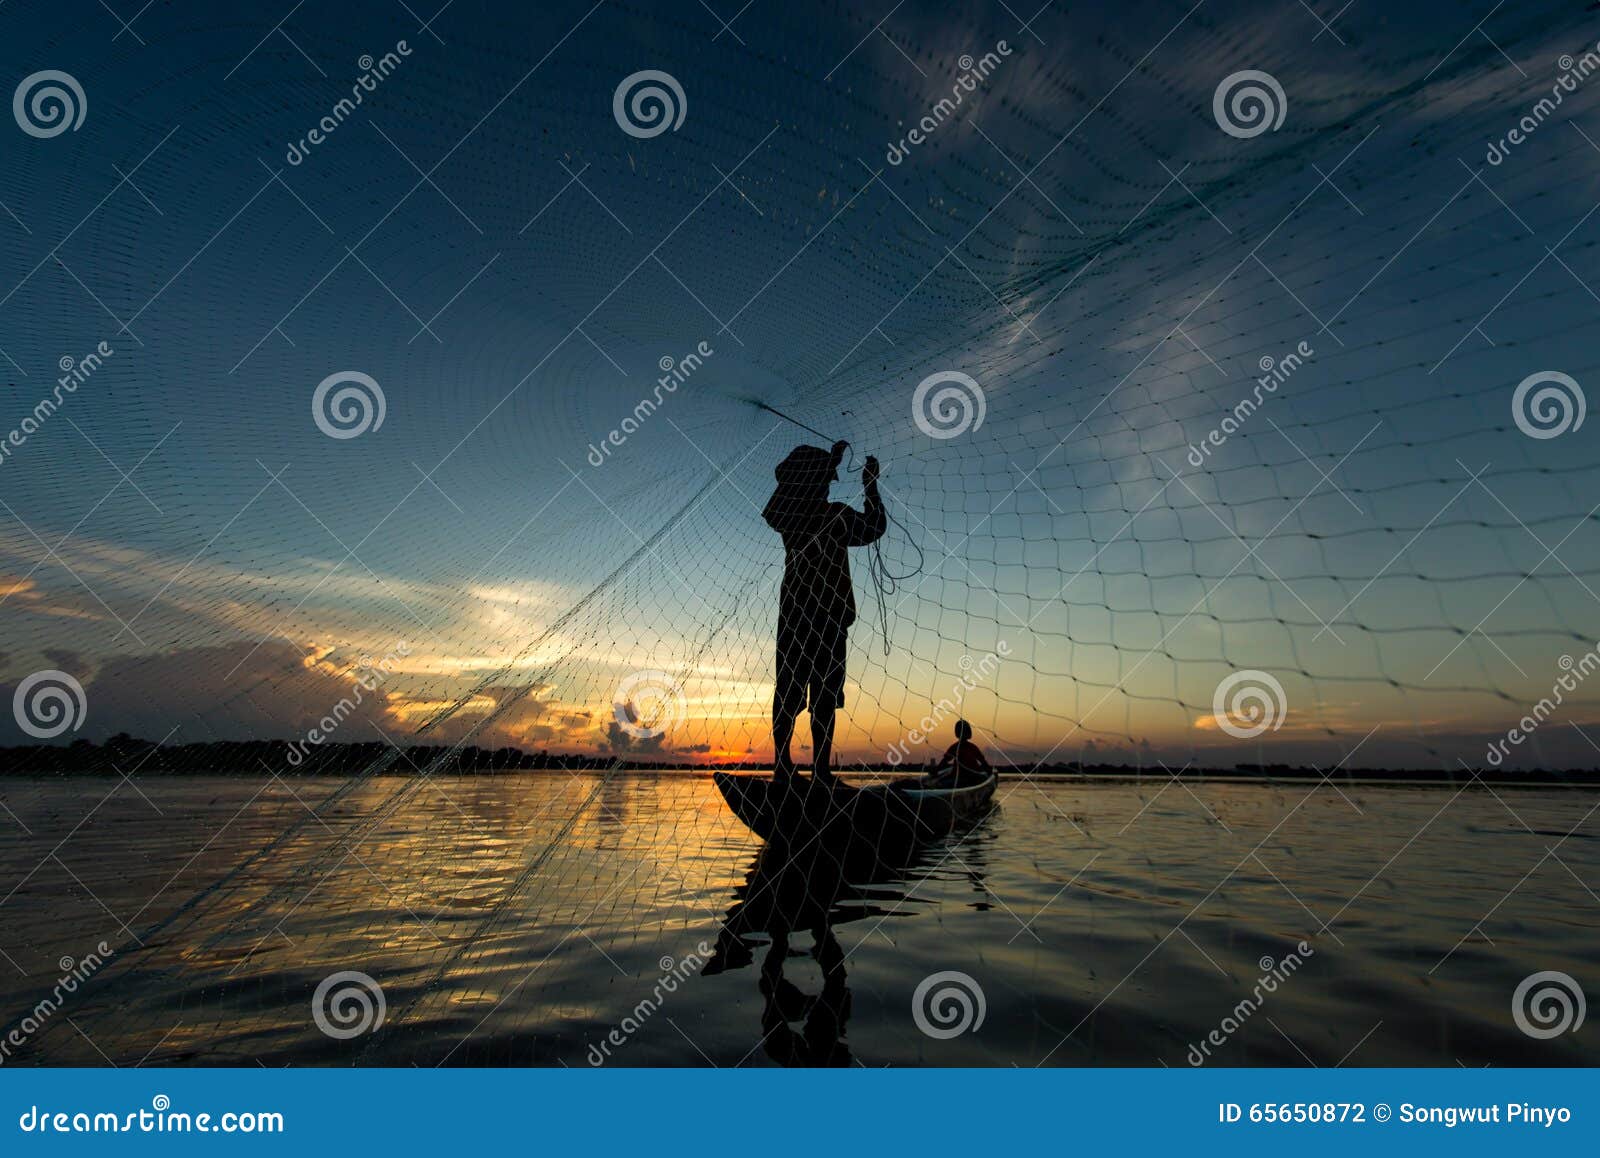 1,207 Fisherman Throwing Net Stock Photos - Free & Royalty-Free